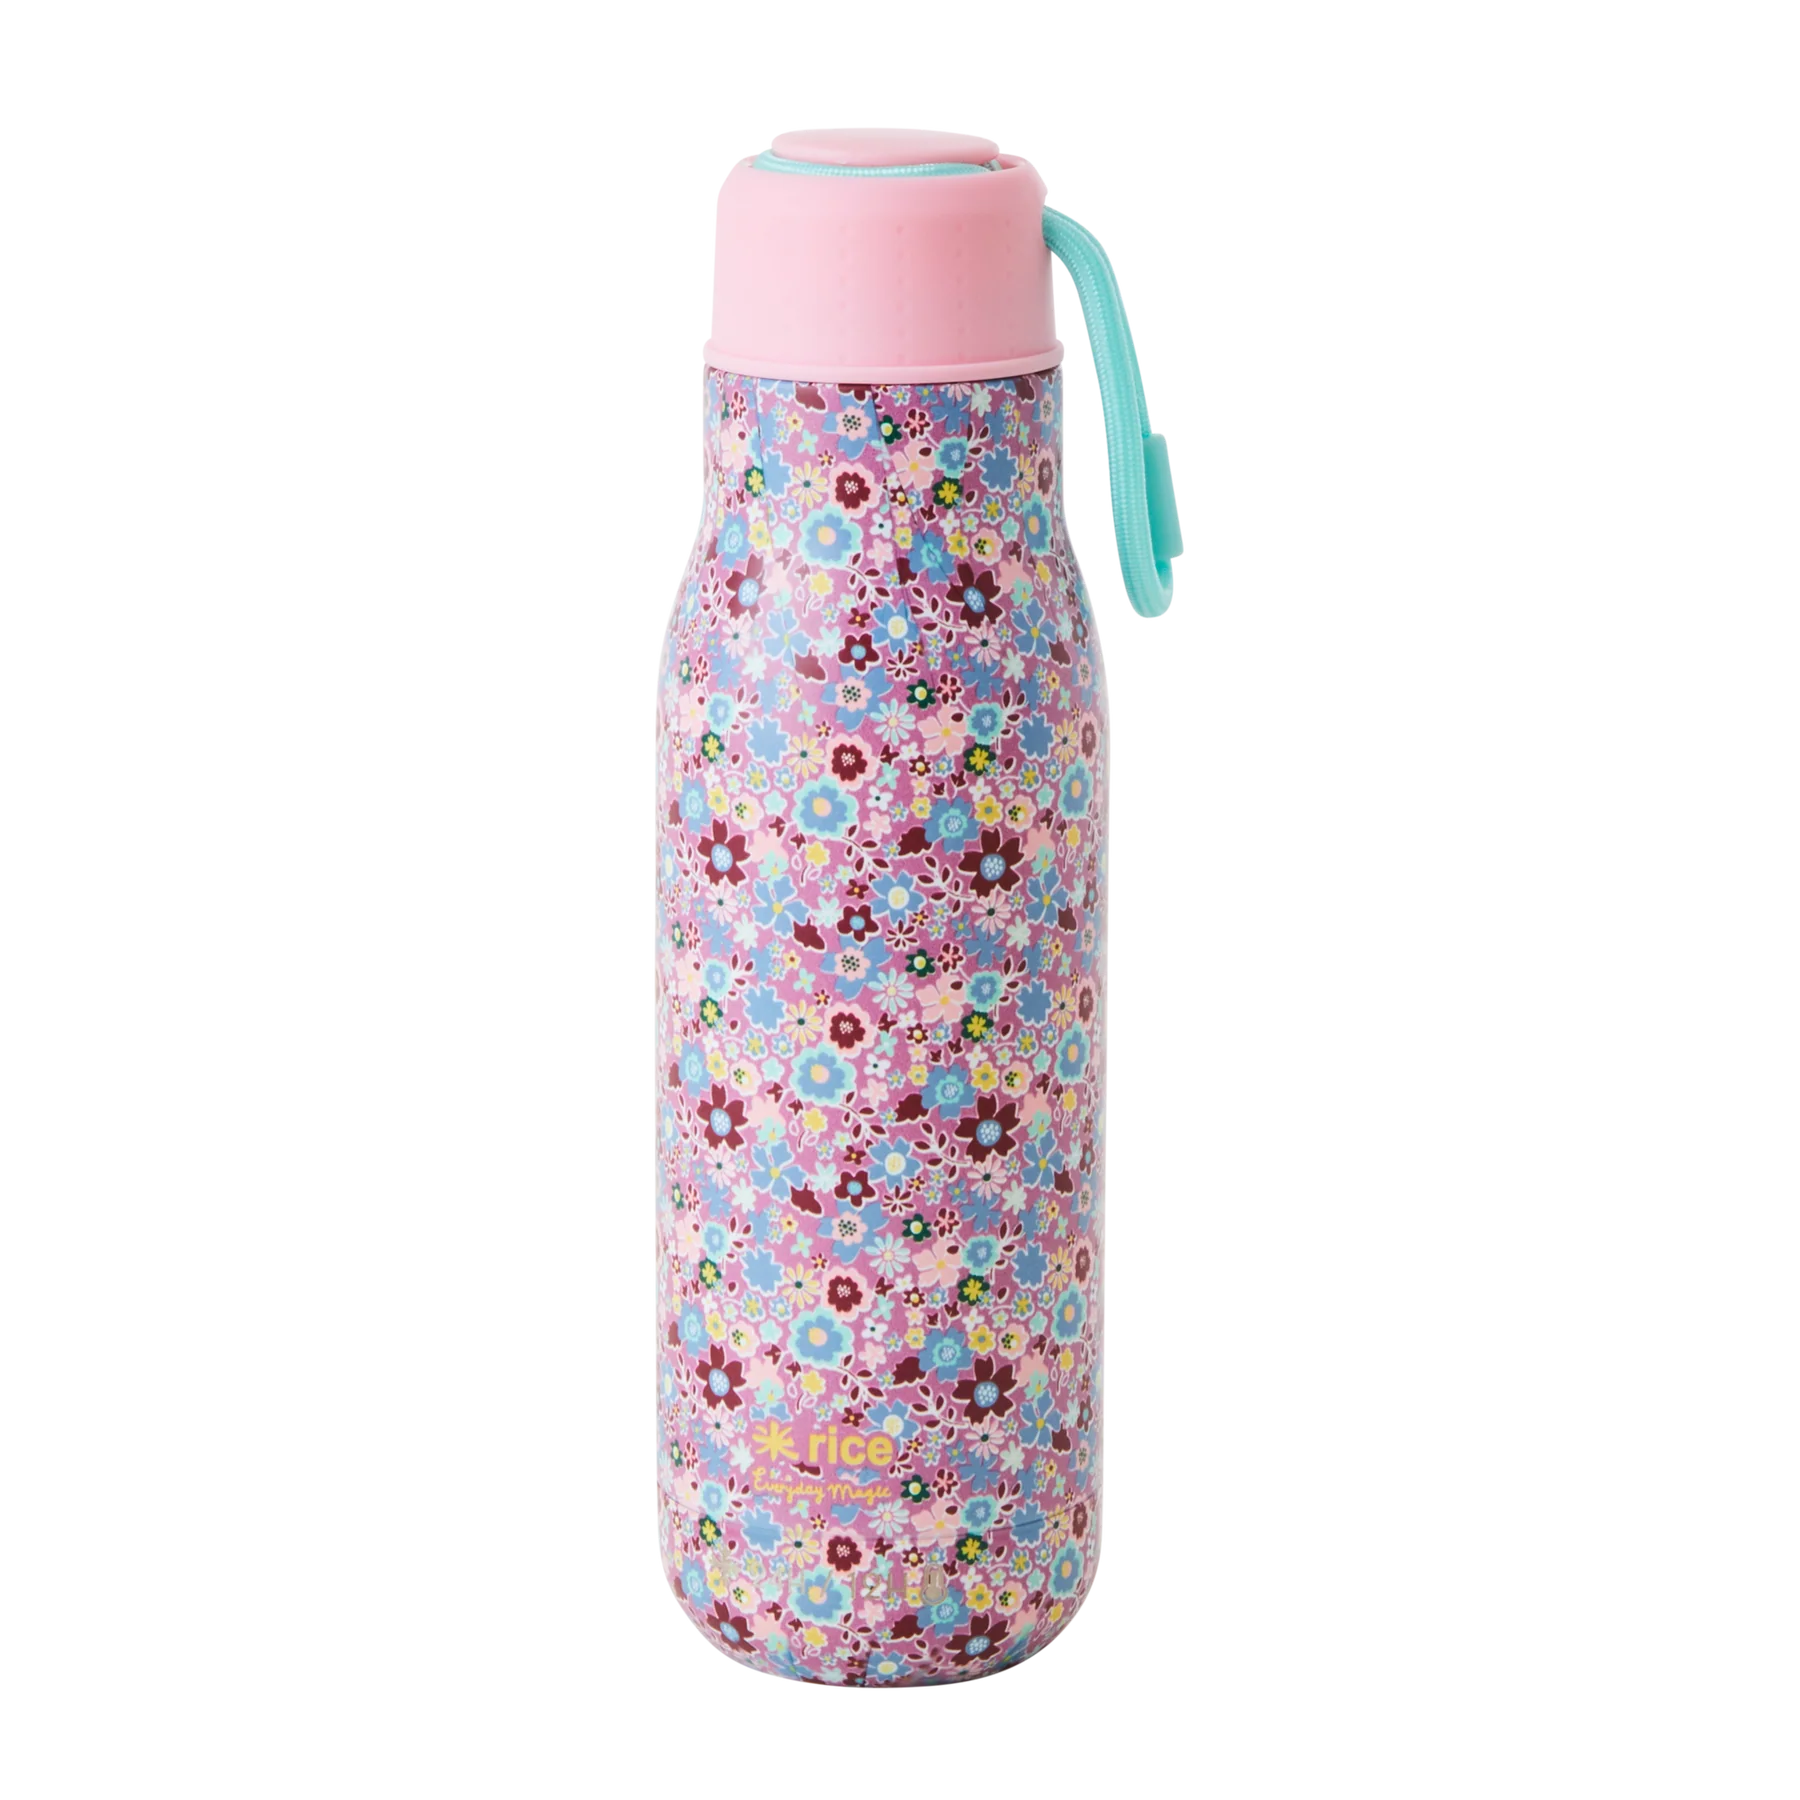 Edelstahl-Trinkflasche mit Lavendel-Herbst-Blumenmuster – 12 Stunden heiß/24 Stunden kalt – 500 ml